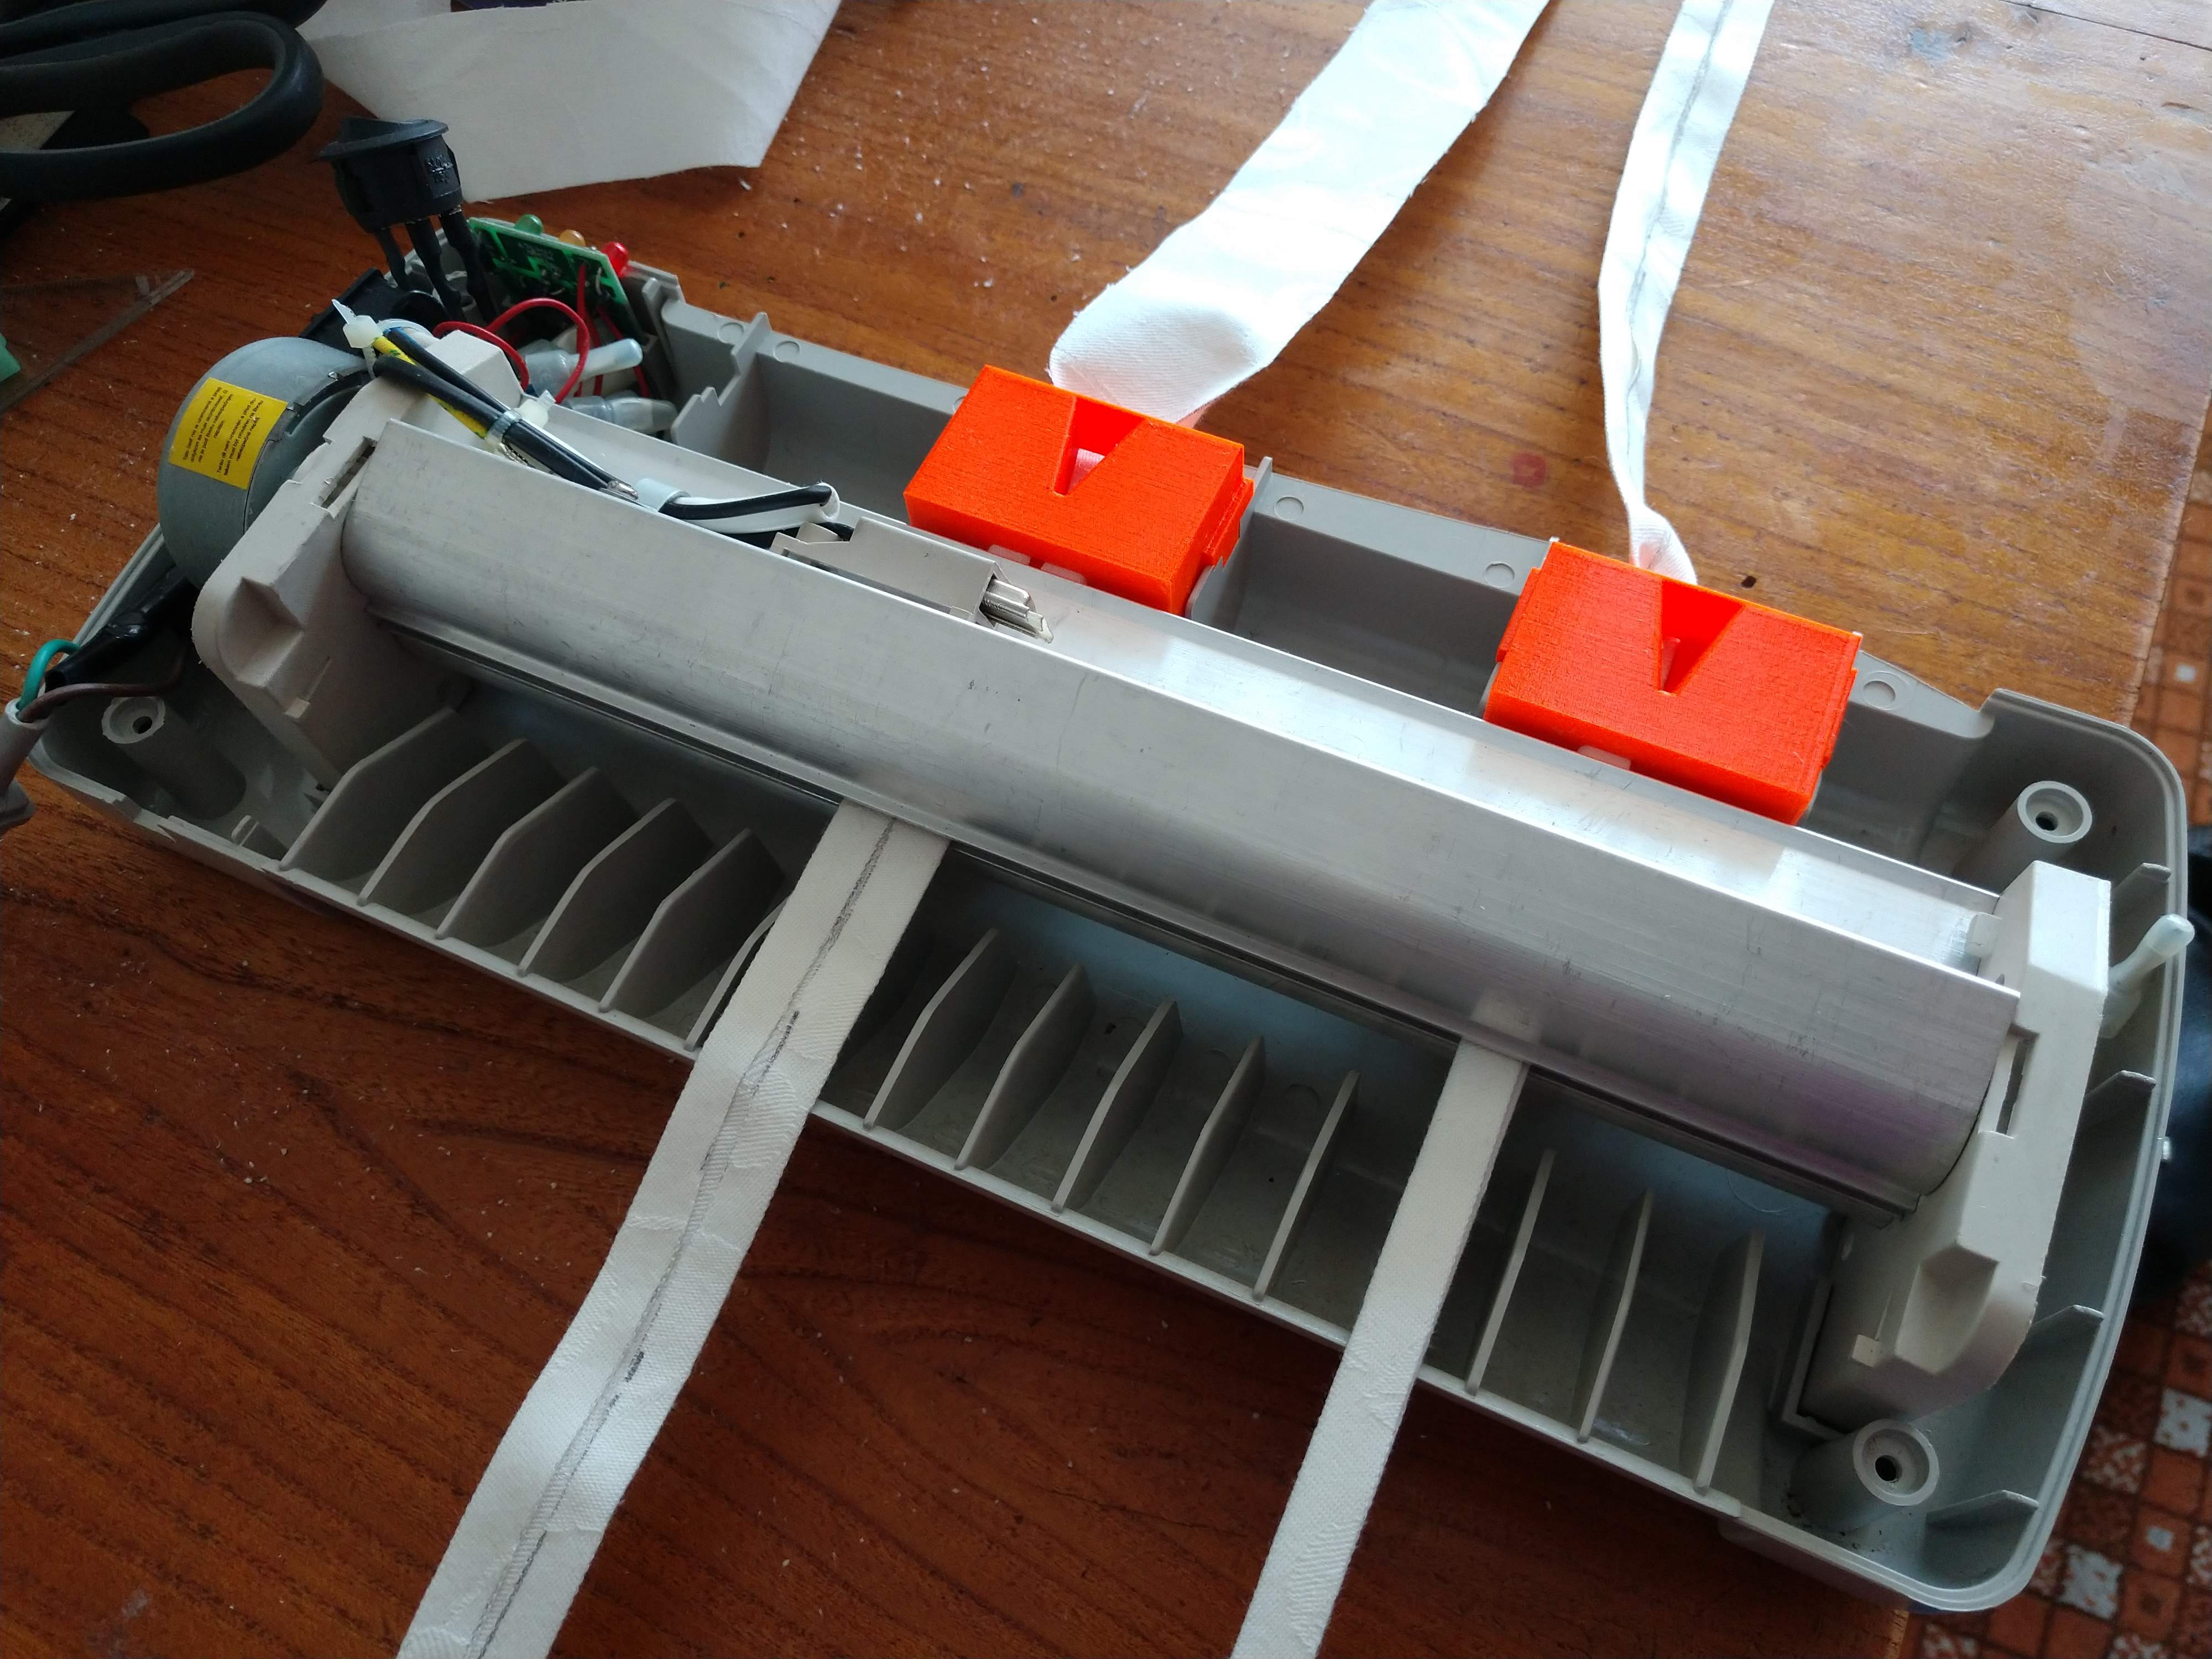 Bias binder using laminator - Pomůcka pro skládání šňůrky k roušce pomocí laminovačky